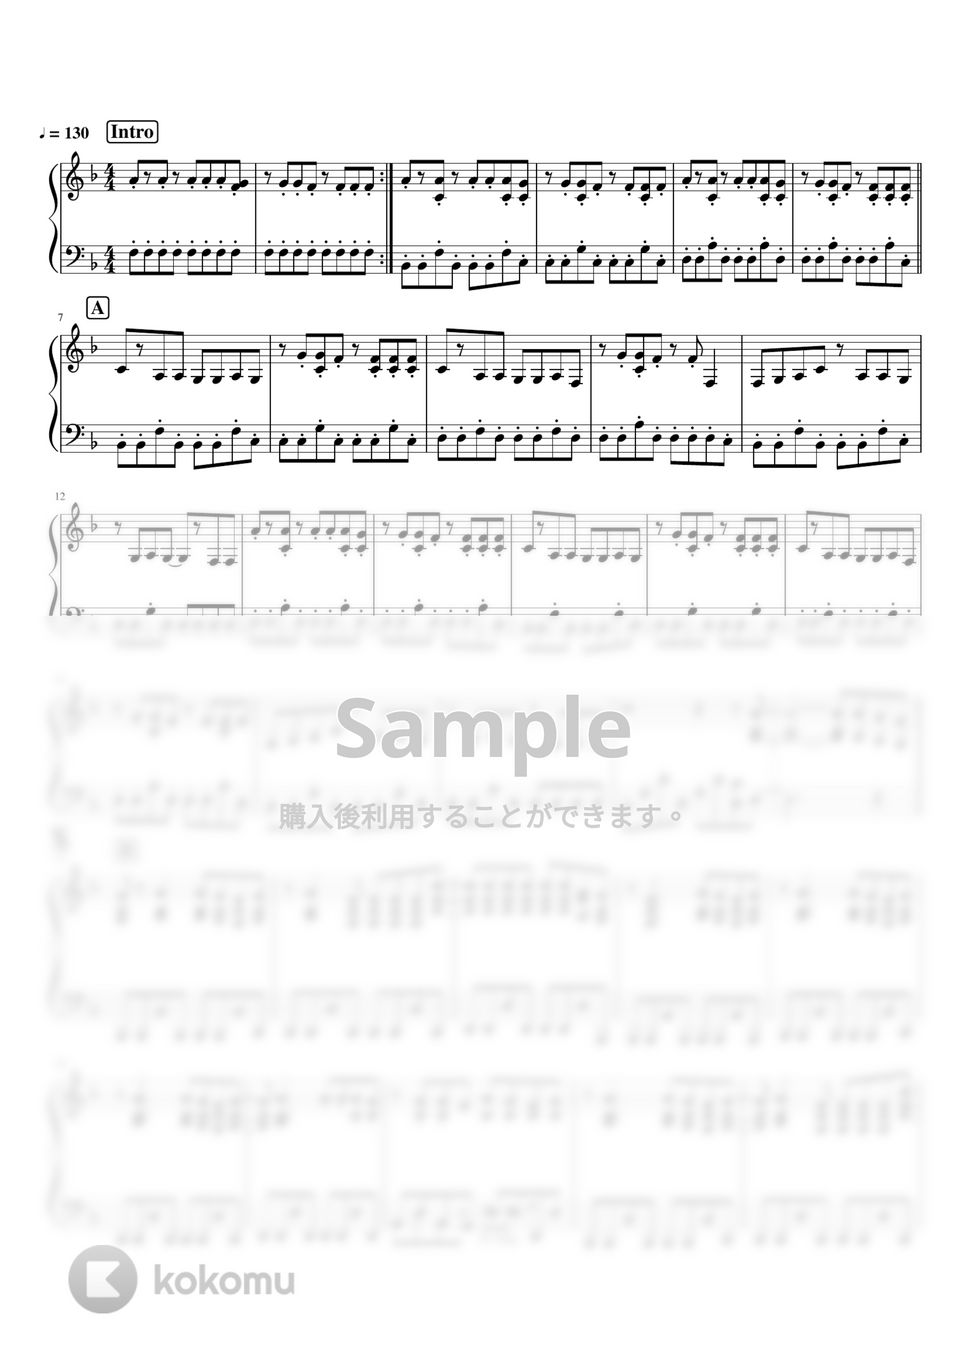 ヨルシカ - 老人と海 by pianomikan